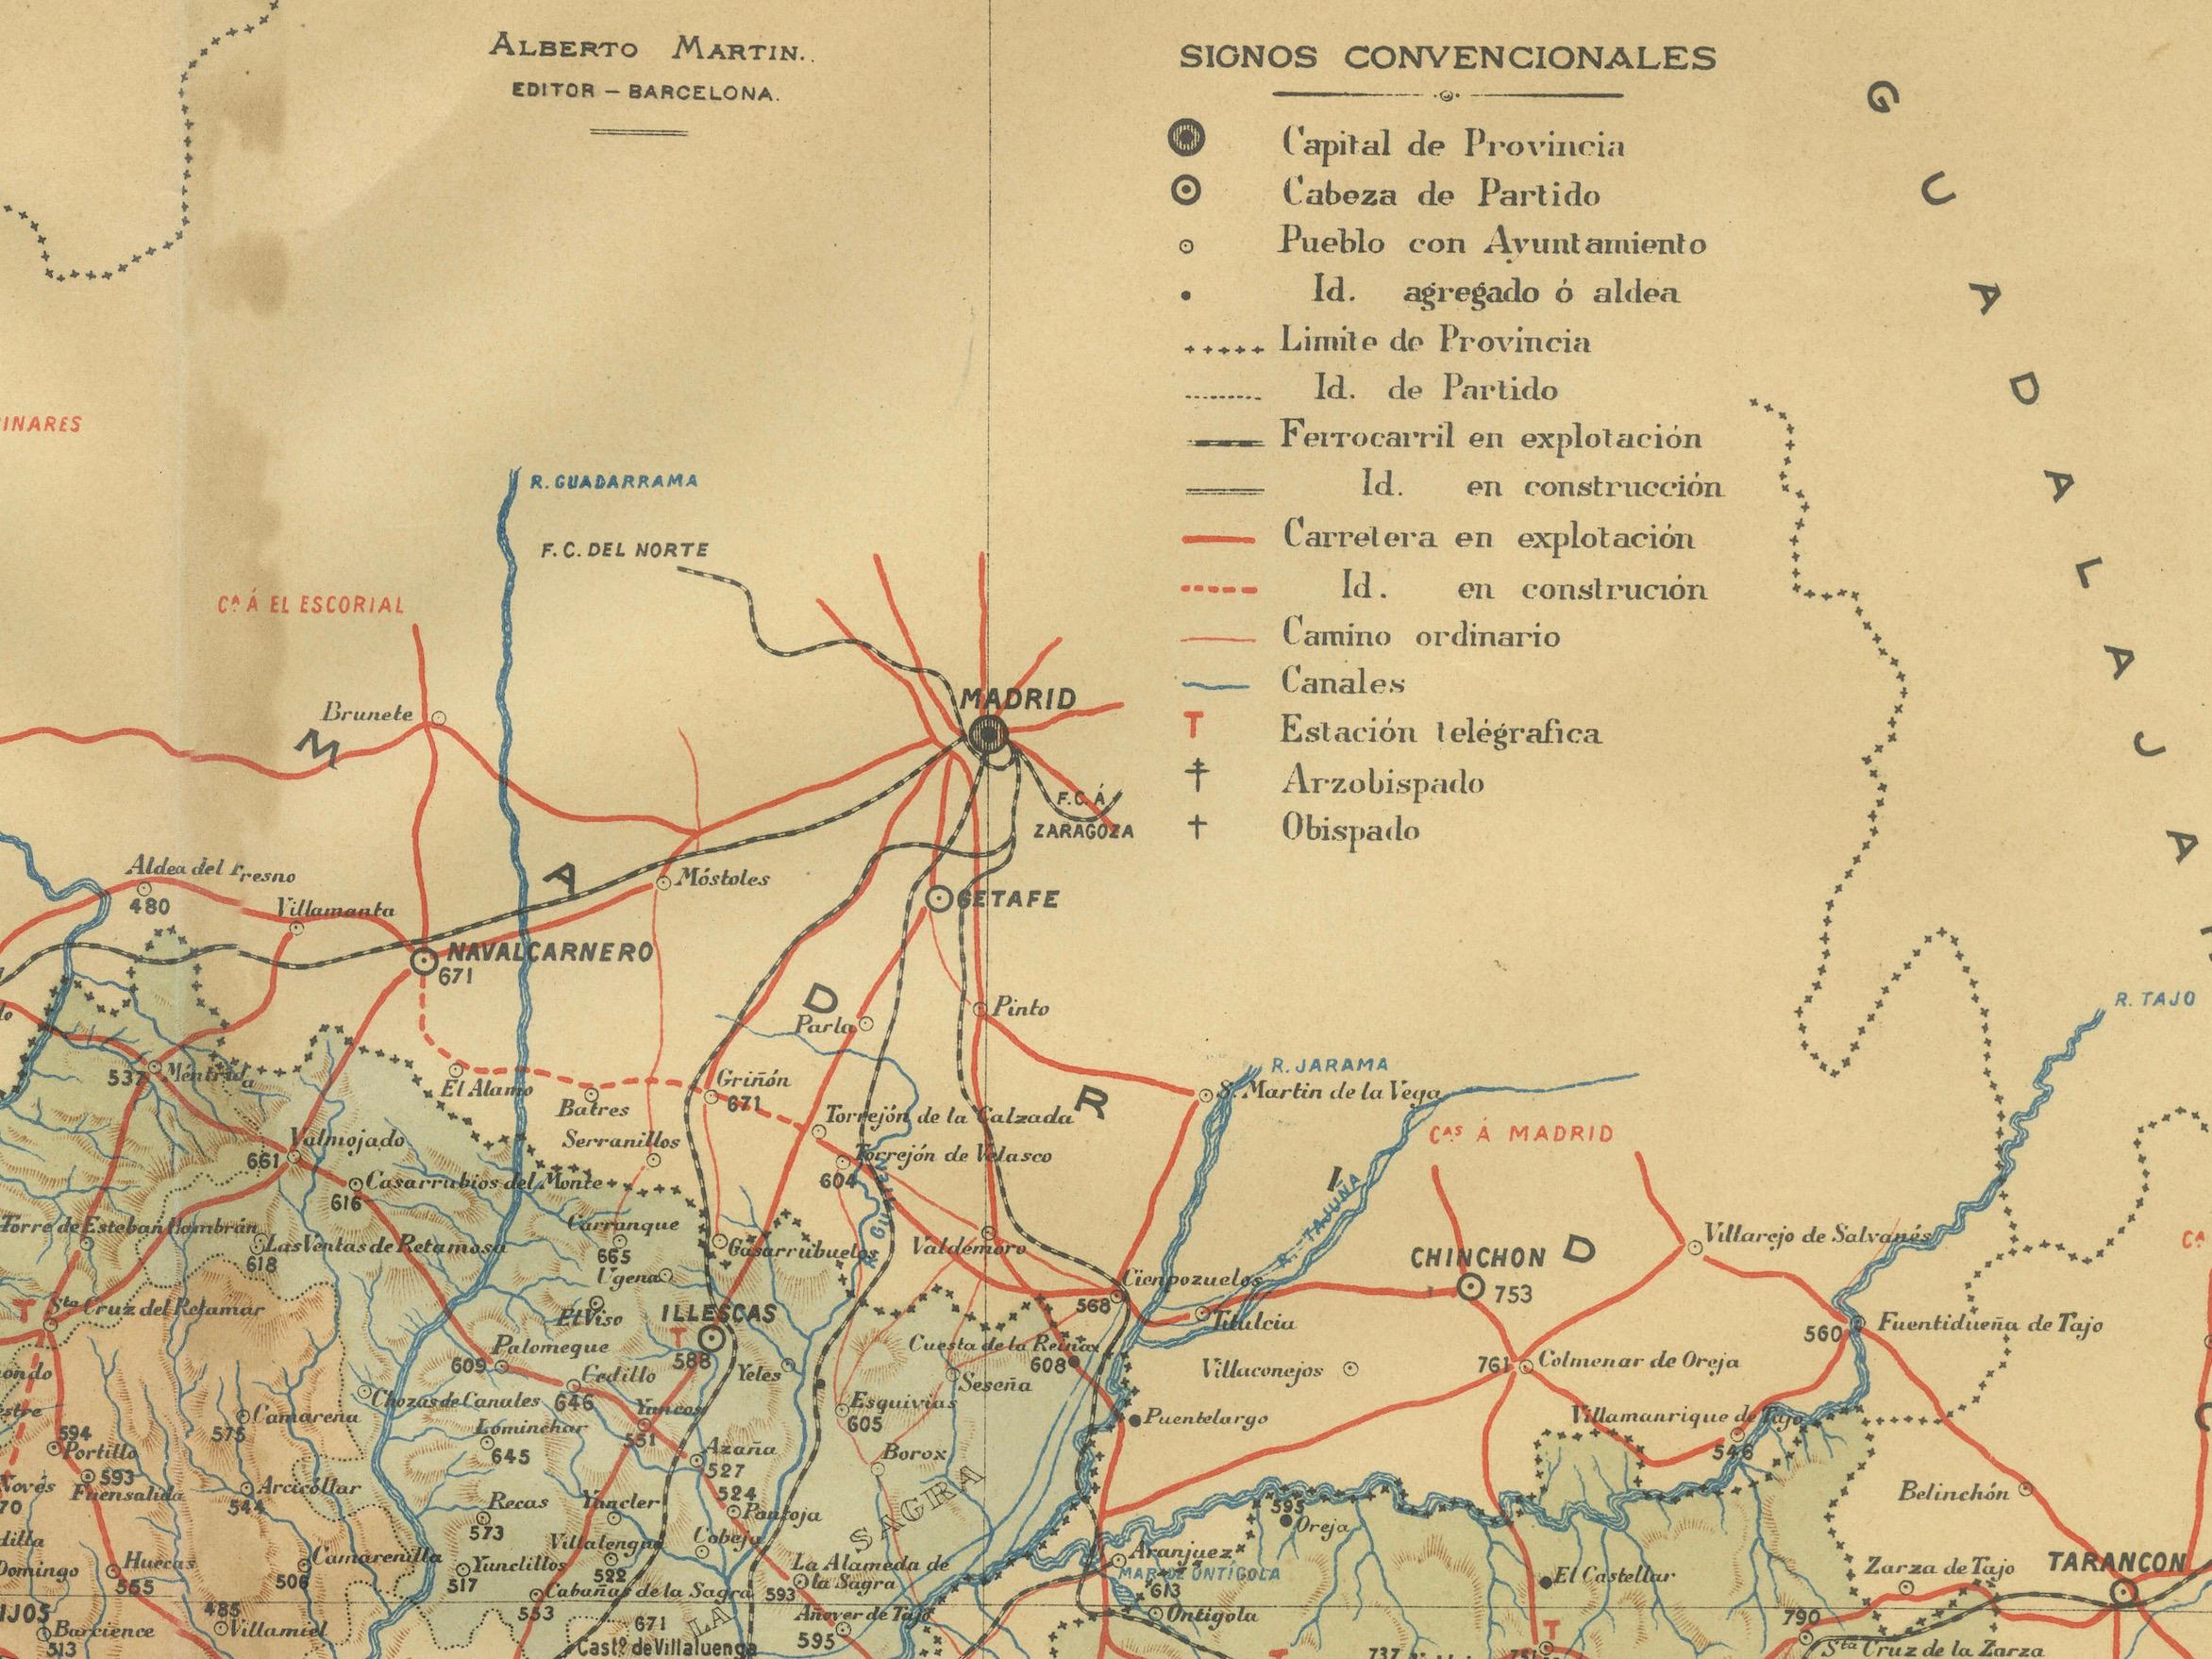 Der Druck ist eine historische Karte der Provinz Toledo aus dem Jahr 1902. Es handelt sich um eine detaillierte, farbige Karte, die topografische Merkmale wie Gebirgszüge und Flüsse sowie Infrastrukturelemente wie Straßen und Eisenbahnen hervorhebt.